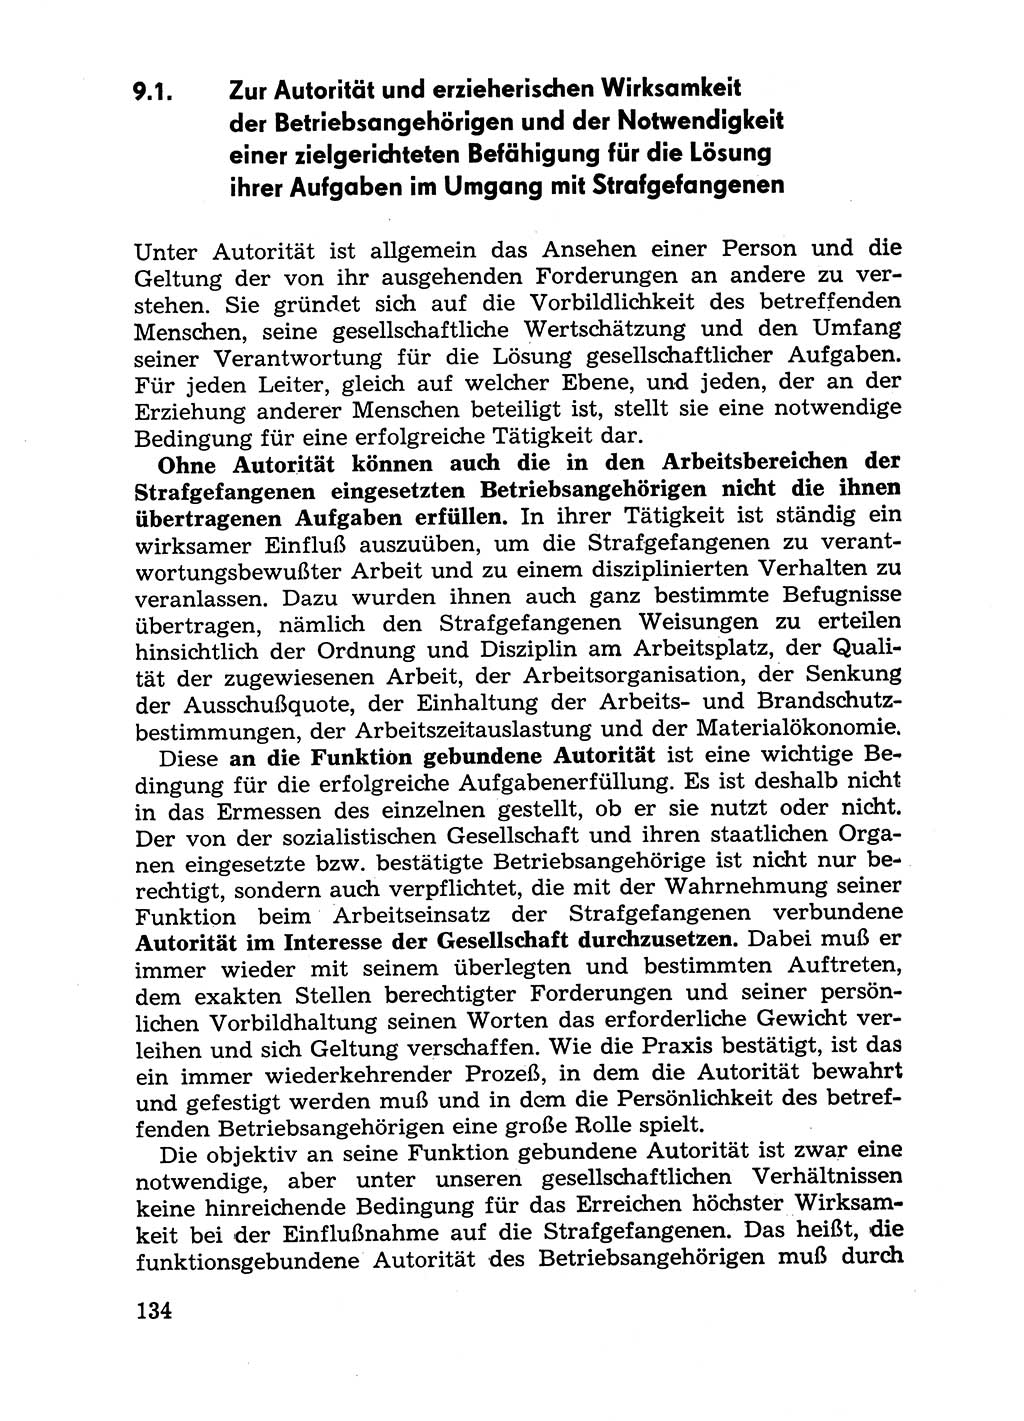 Handbuch für Betriebsangehörige, Abteilung Strafvollzug (SV) [Ministerium des Innern (MdI) Deutsche Demokratische Republik (DDR)] 1981, Seite 134 (Hb. BA Abt. SV MdI DDR 1981, S. 134)